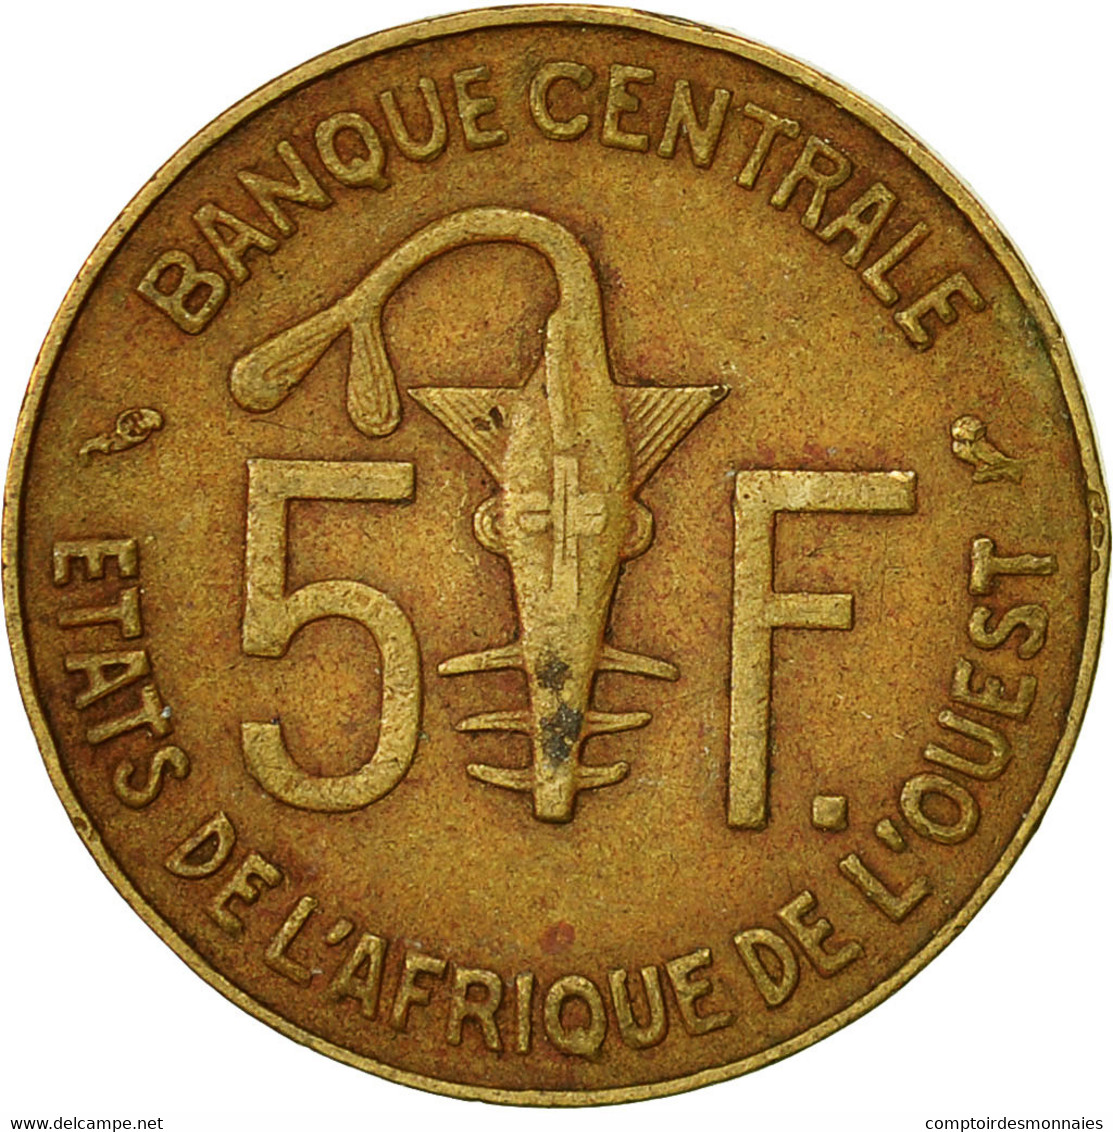 Monnaie, West African States, 5 Francs, 1974, Paris, TTB - Elfenbeinküste